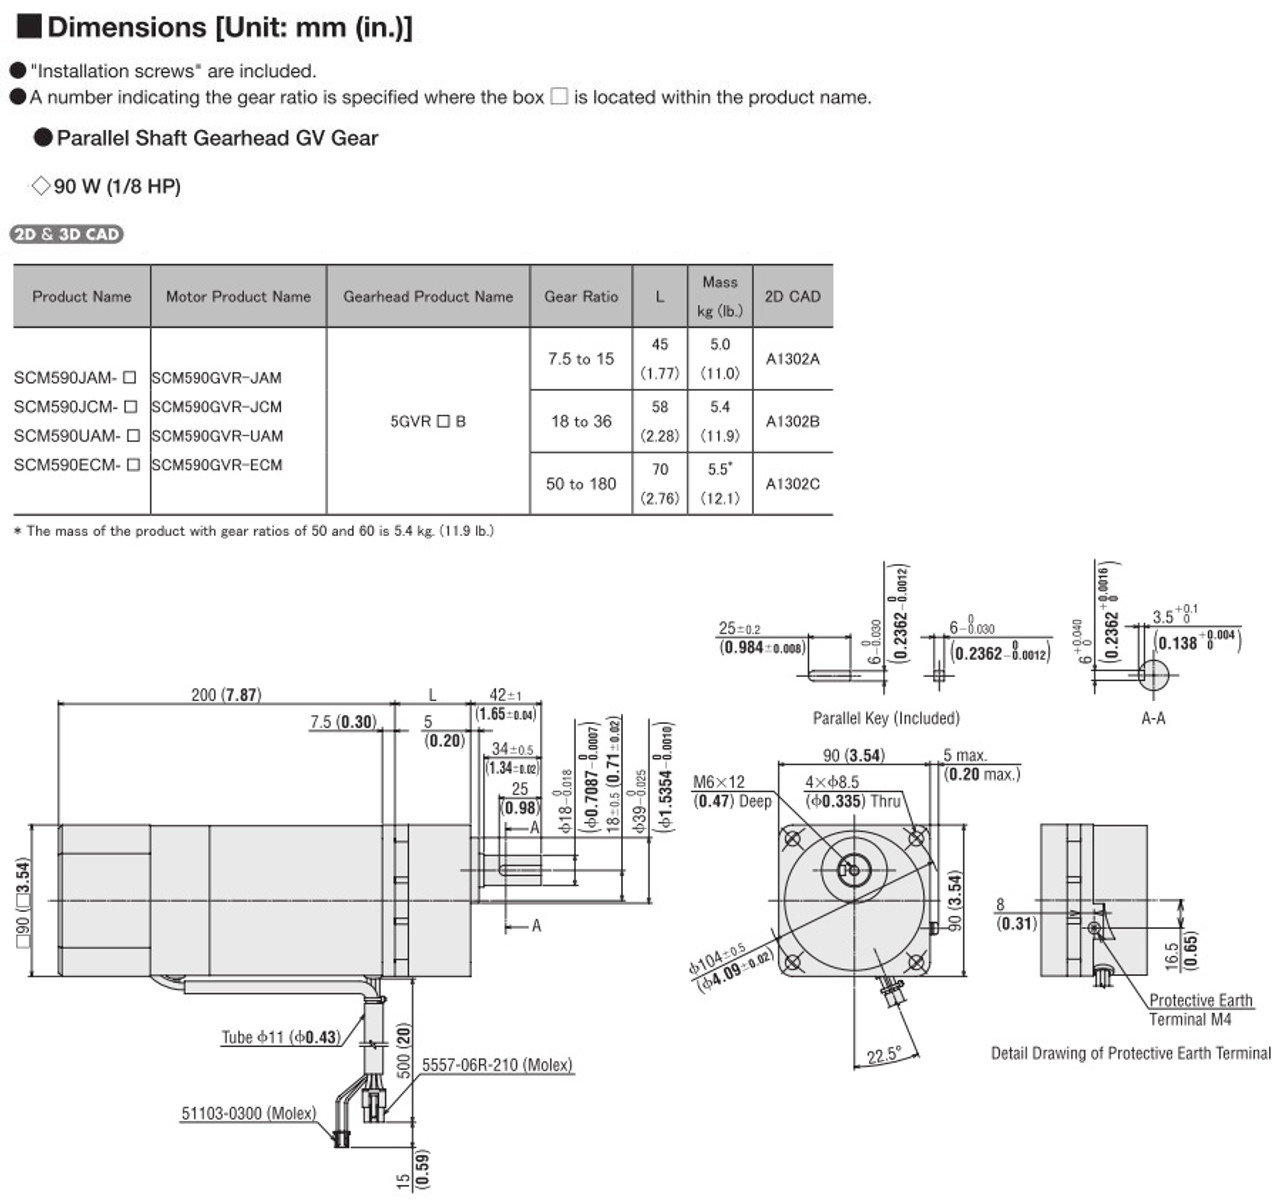 SCM590UAM-25 - Dimensions